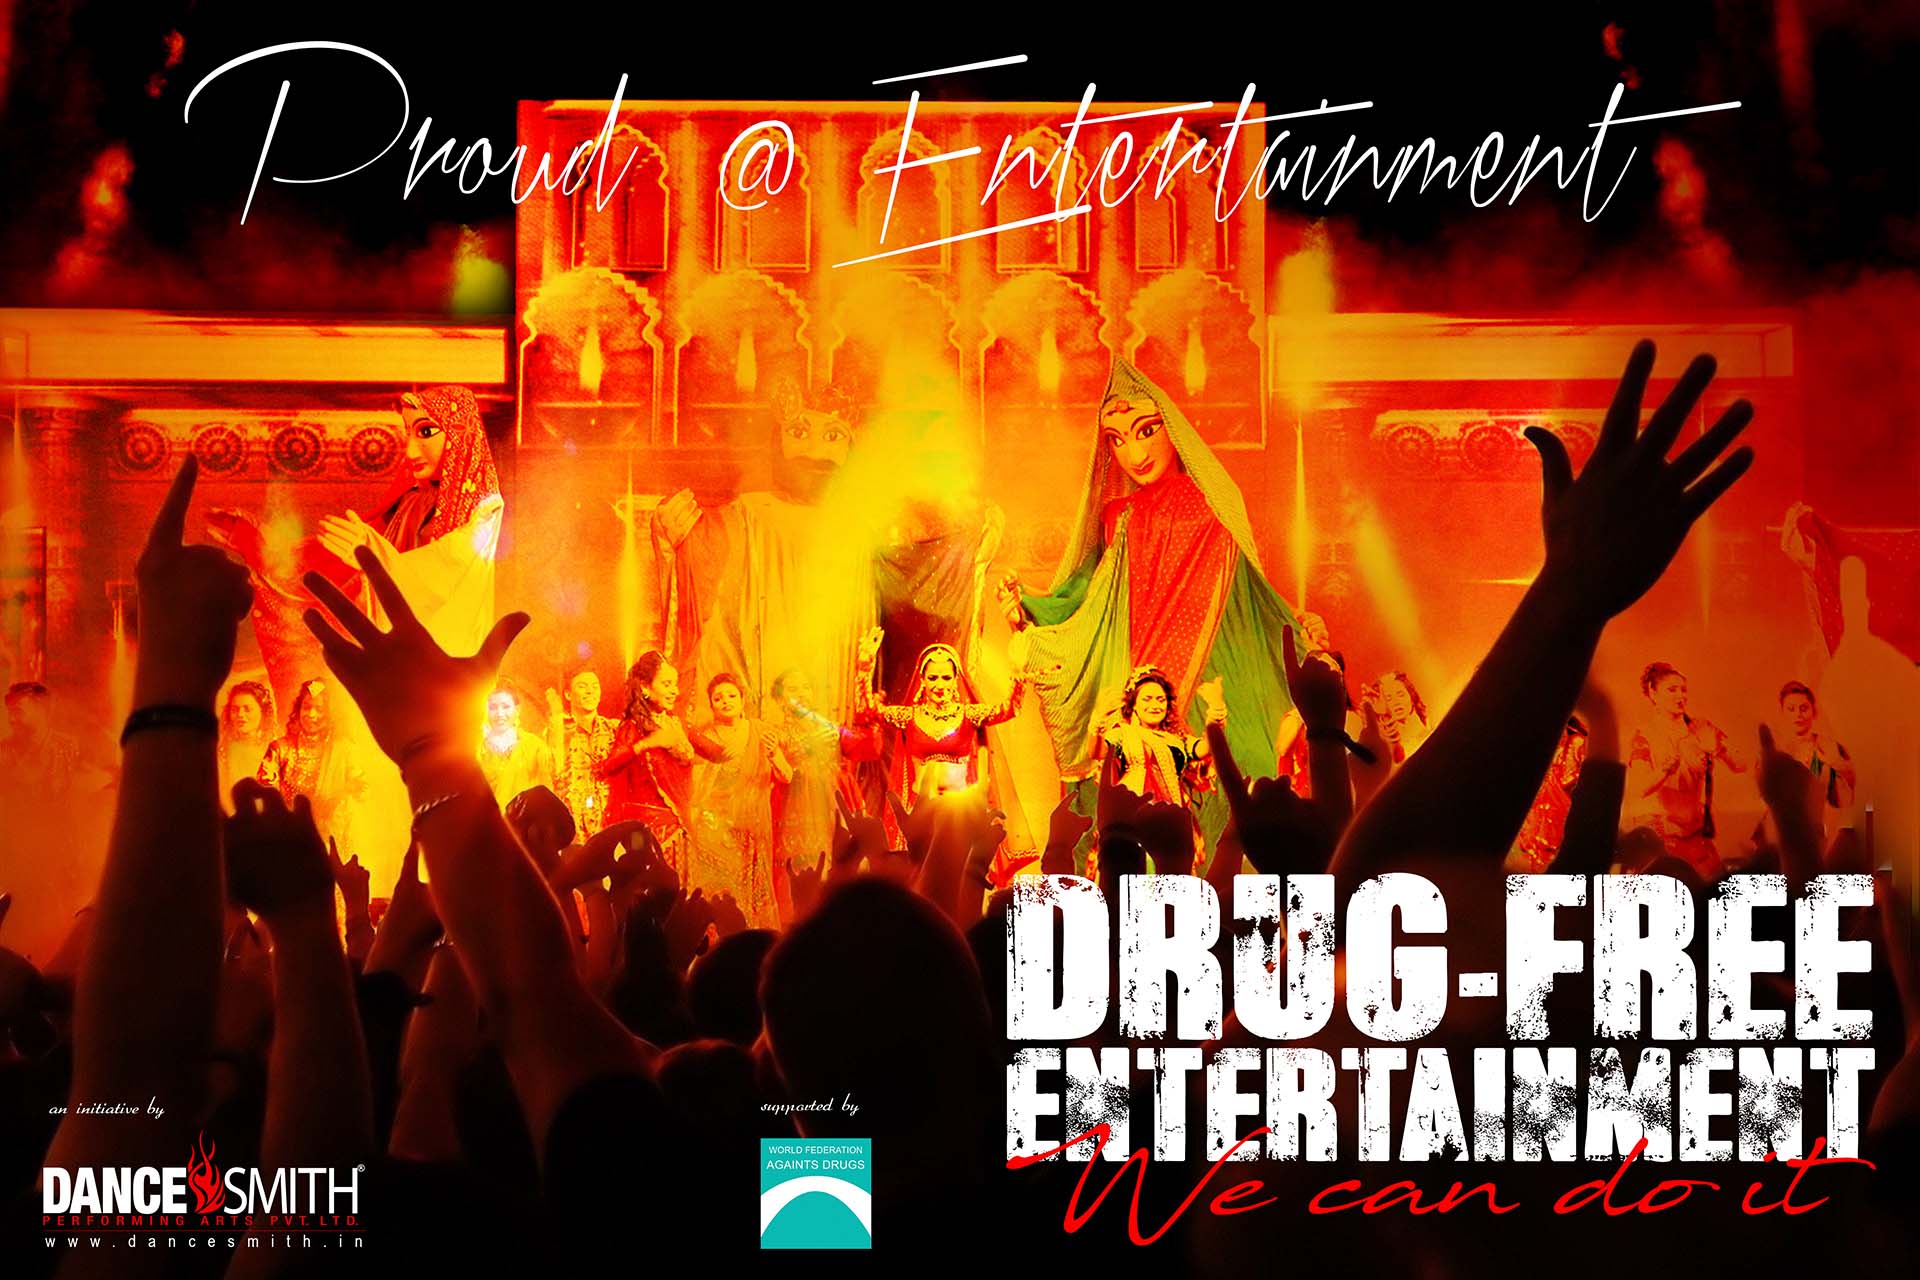 Drug Free entertainment